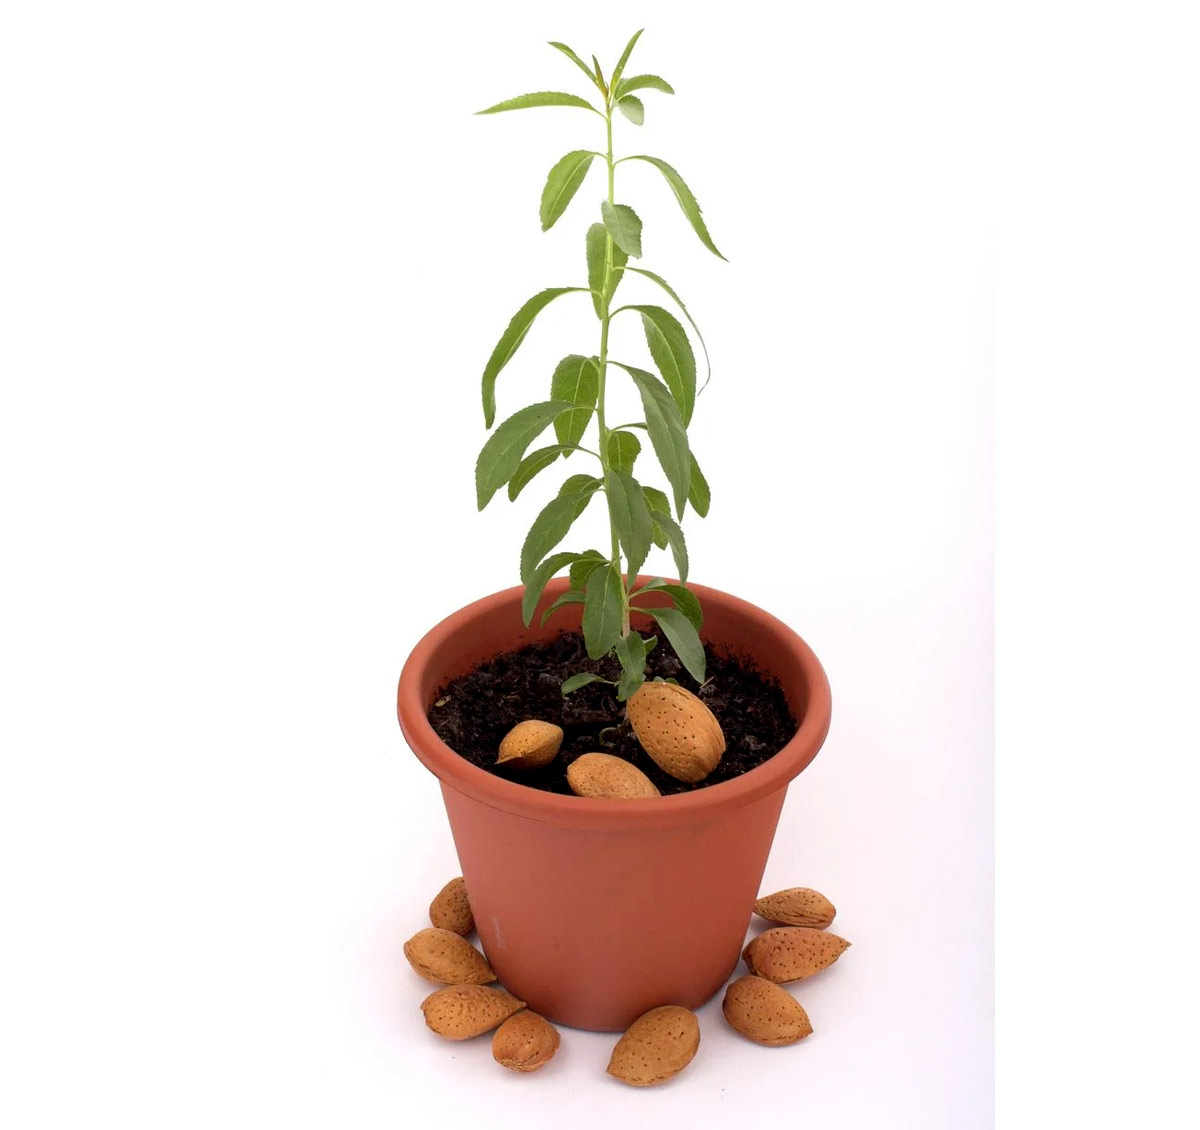 बादाम का पौधा कैसे लगाएं। How to Grow Almond Plants। Gardening Hacks | how to grow almond plant at home | HerZindagi